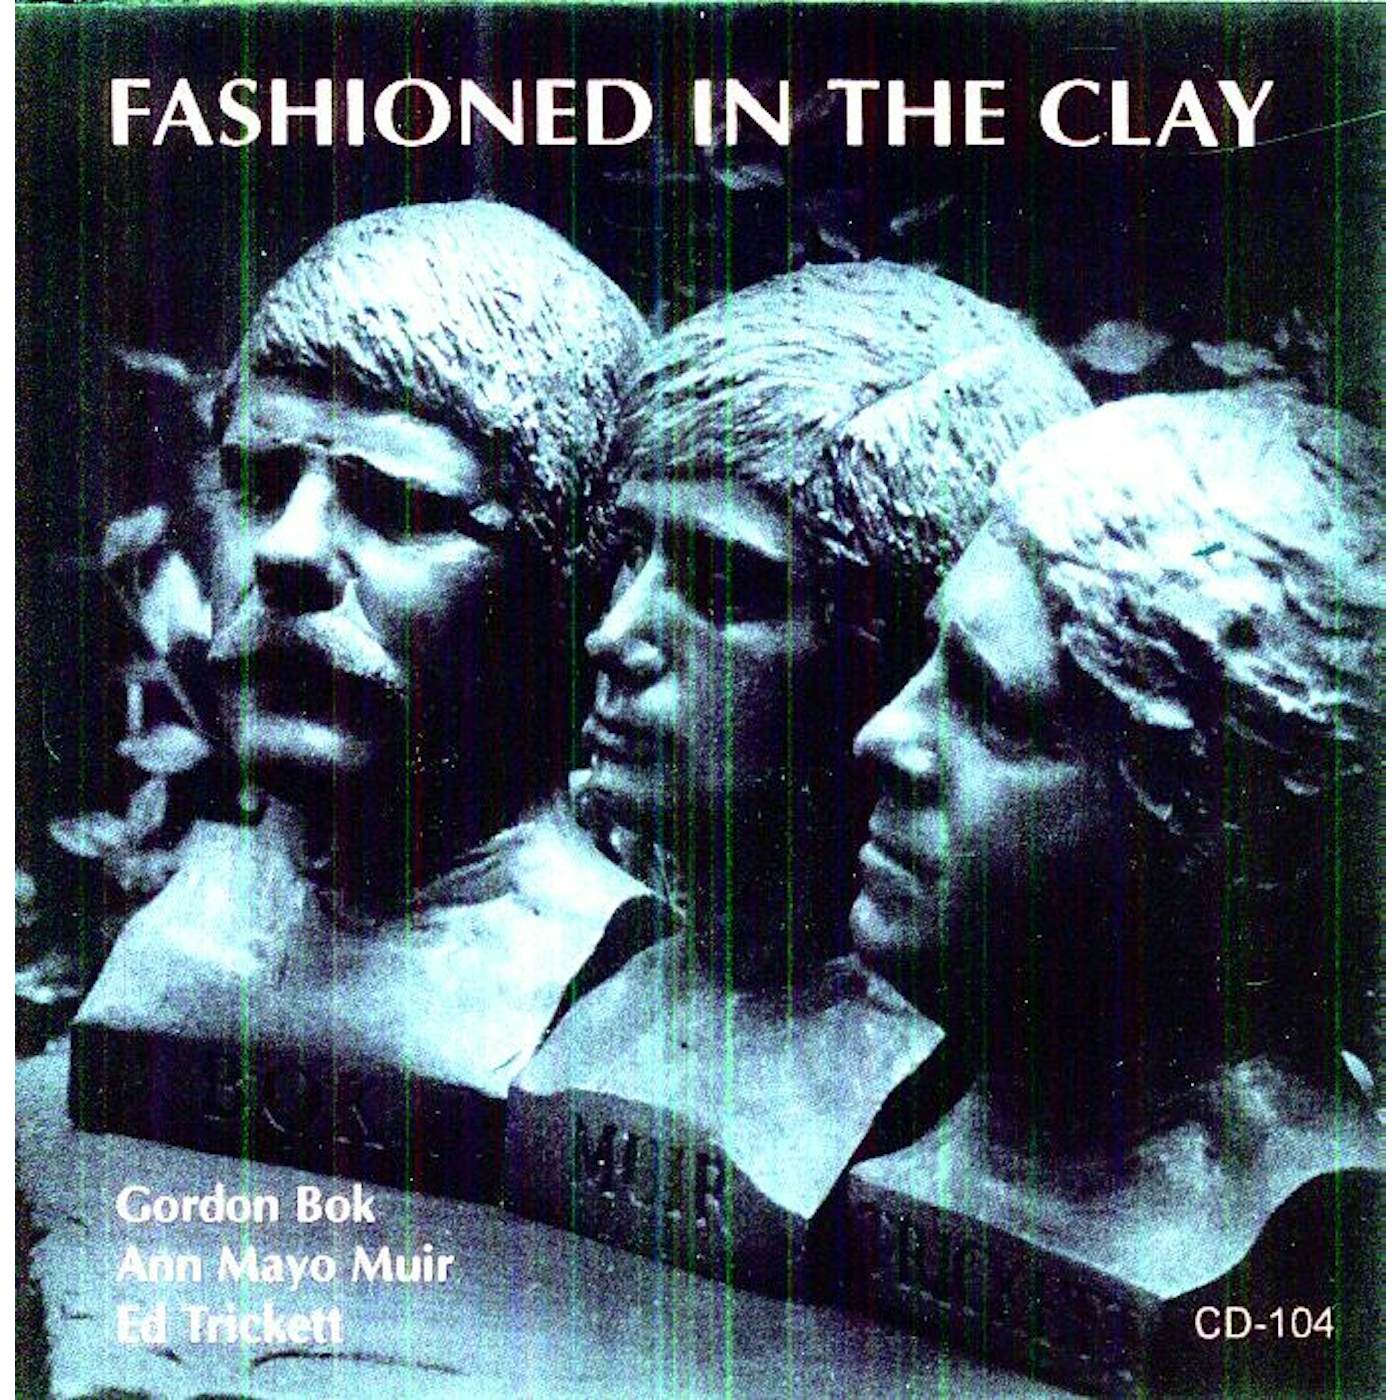 Gordon Bok, Ed Trickett, Ann Mayo Muir FASHIONED IN THE CLAY CD